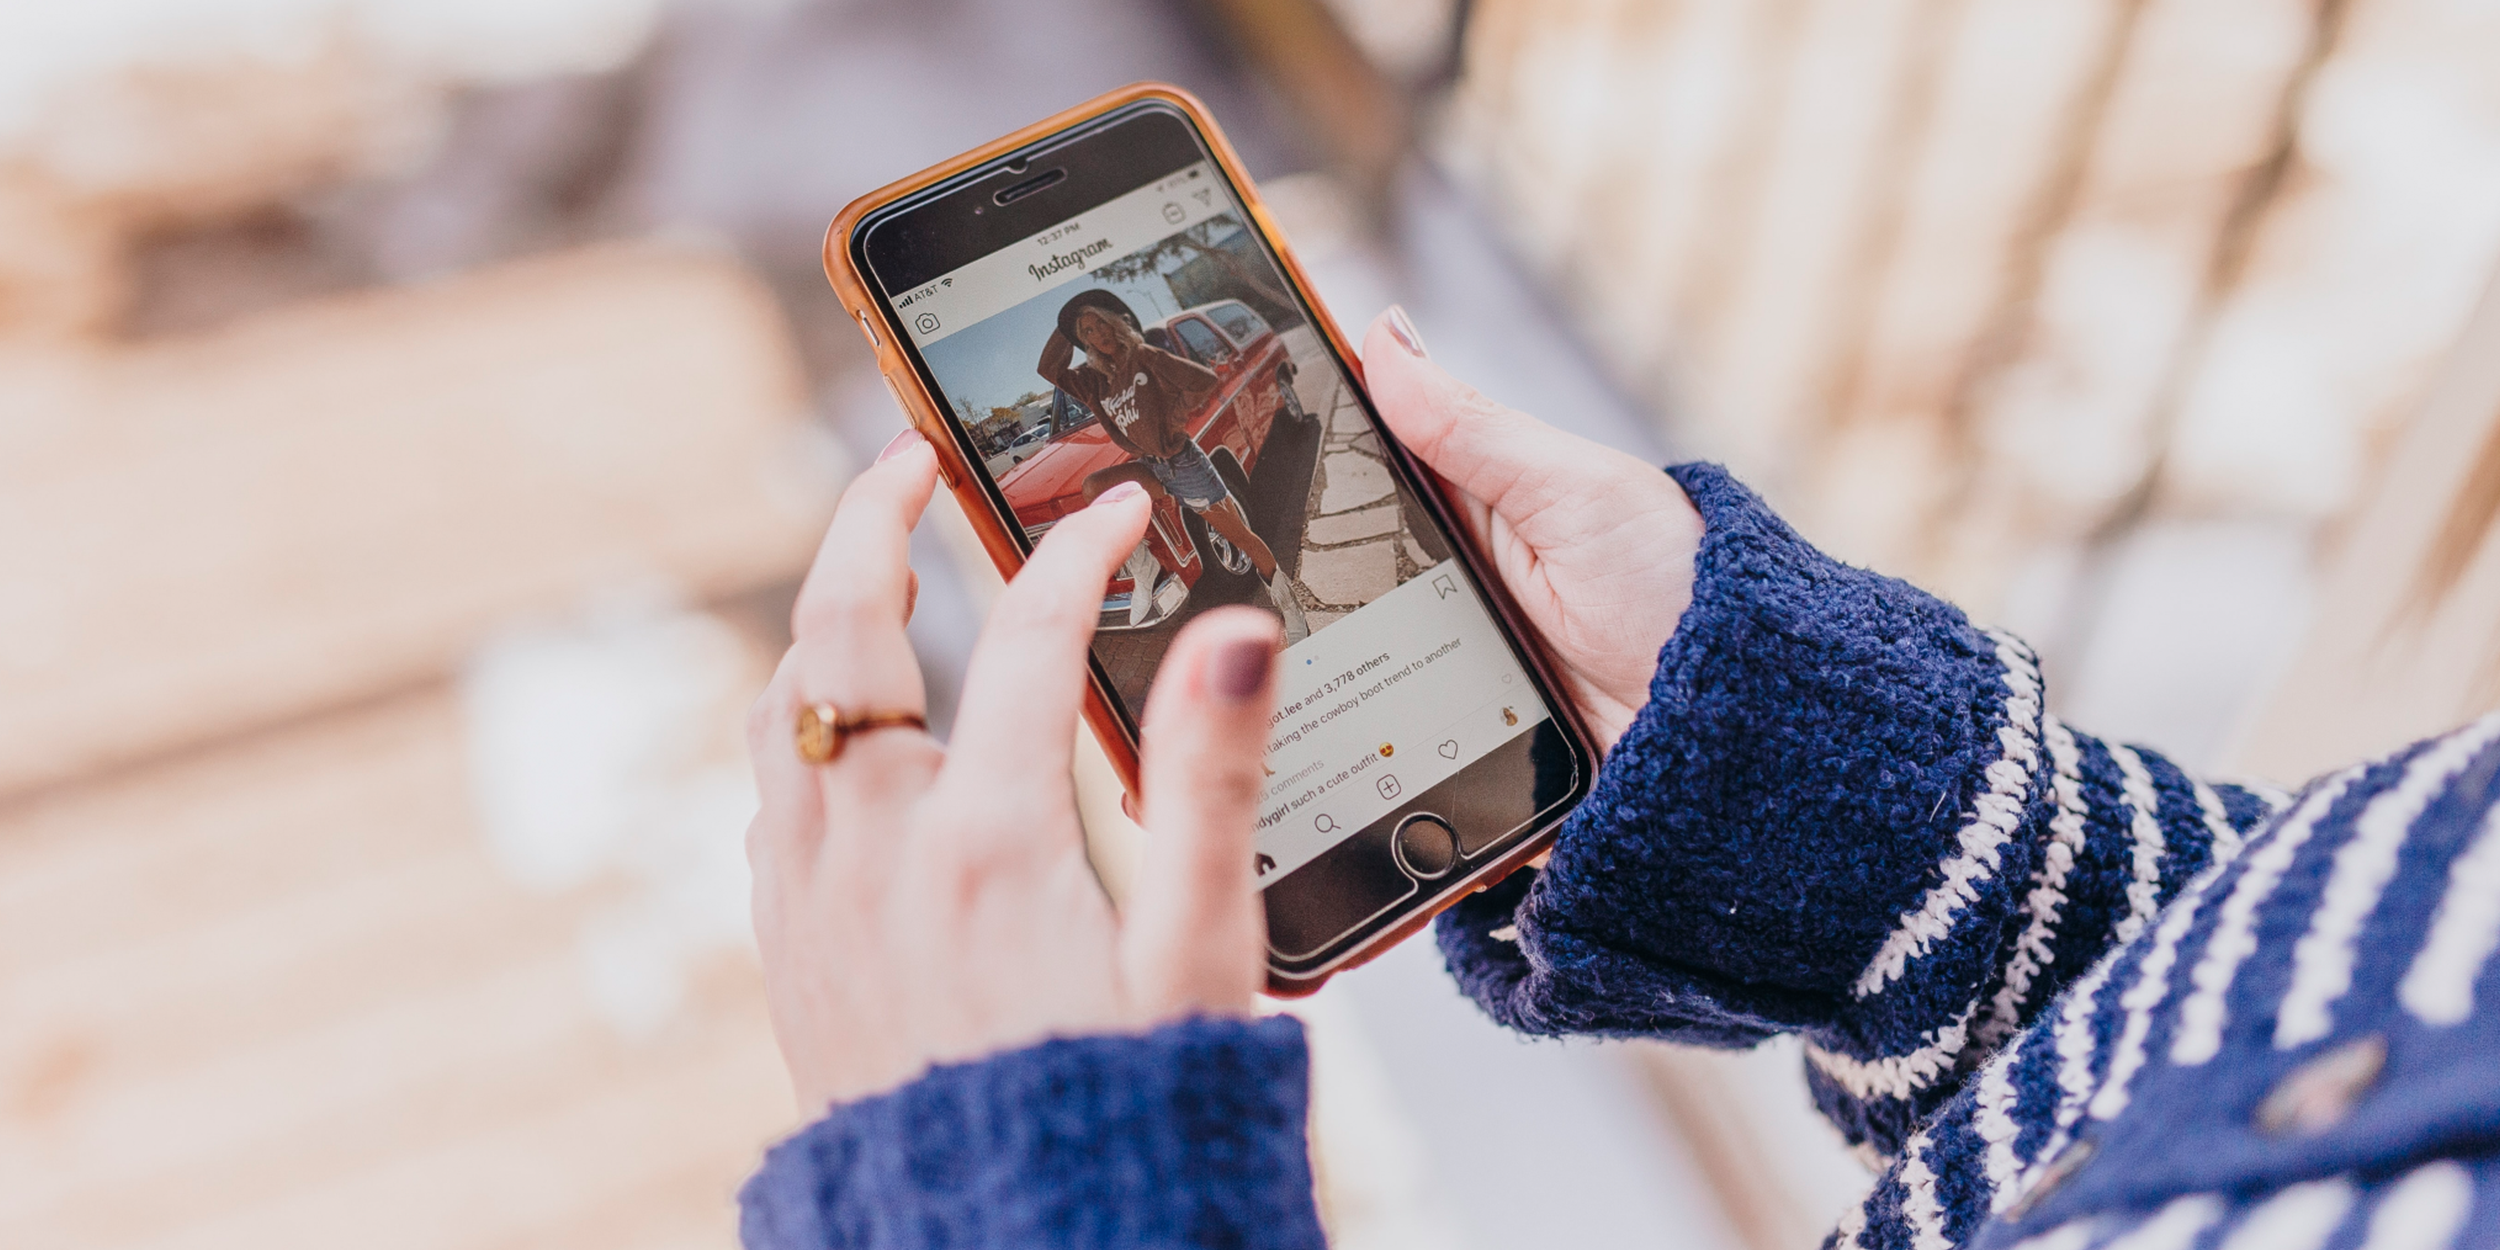 Формат видео для Instagram: В ленте, историях, роликах и рекламе